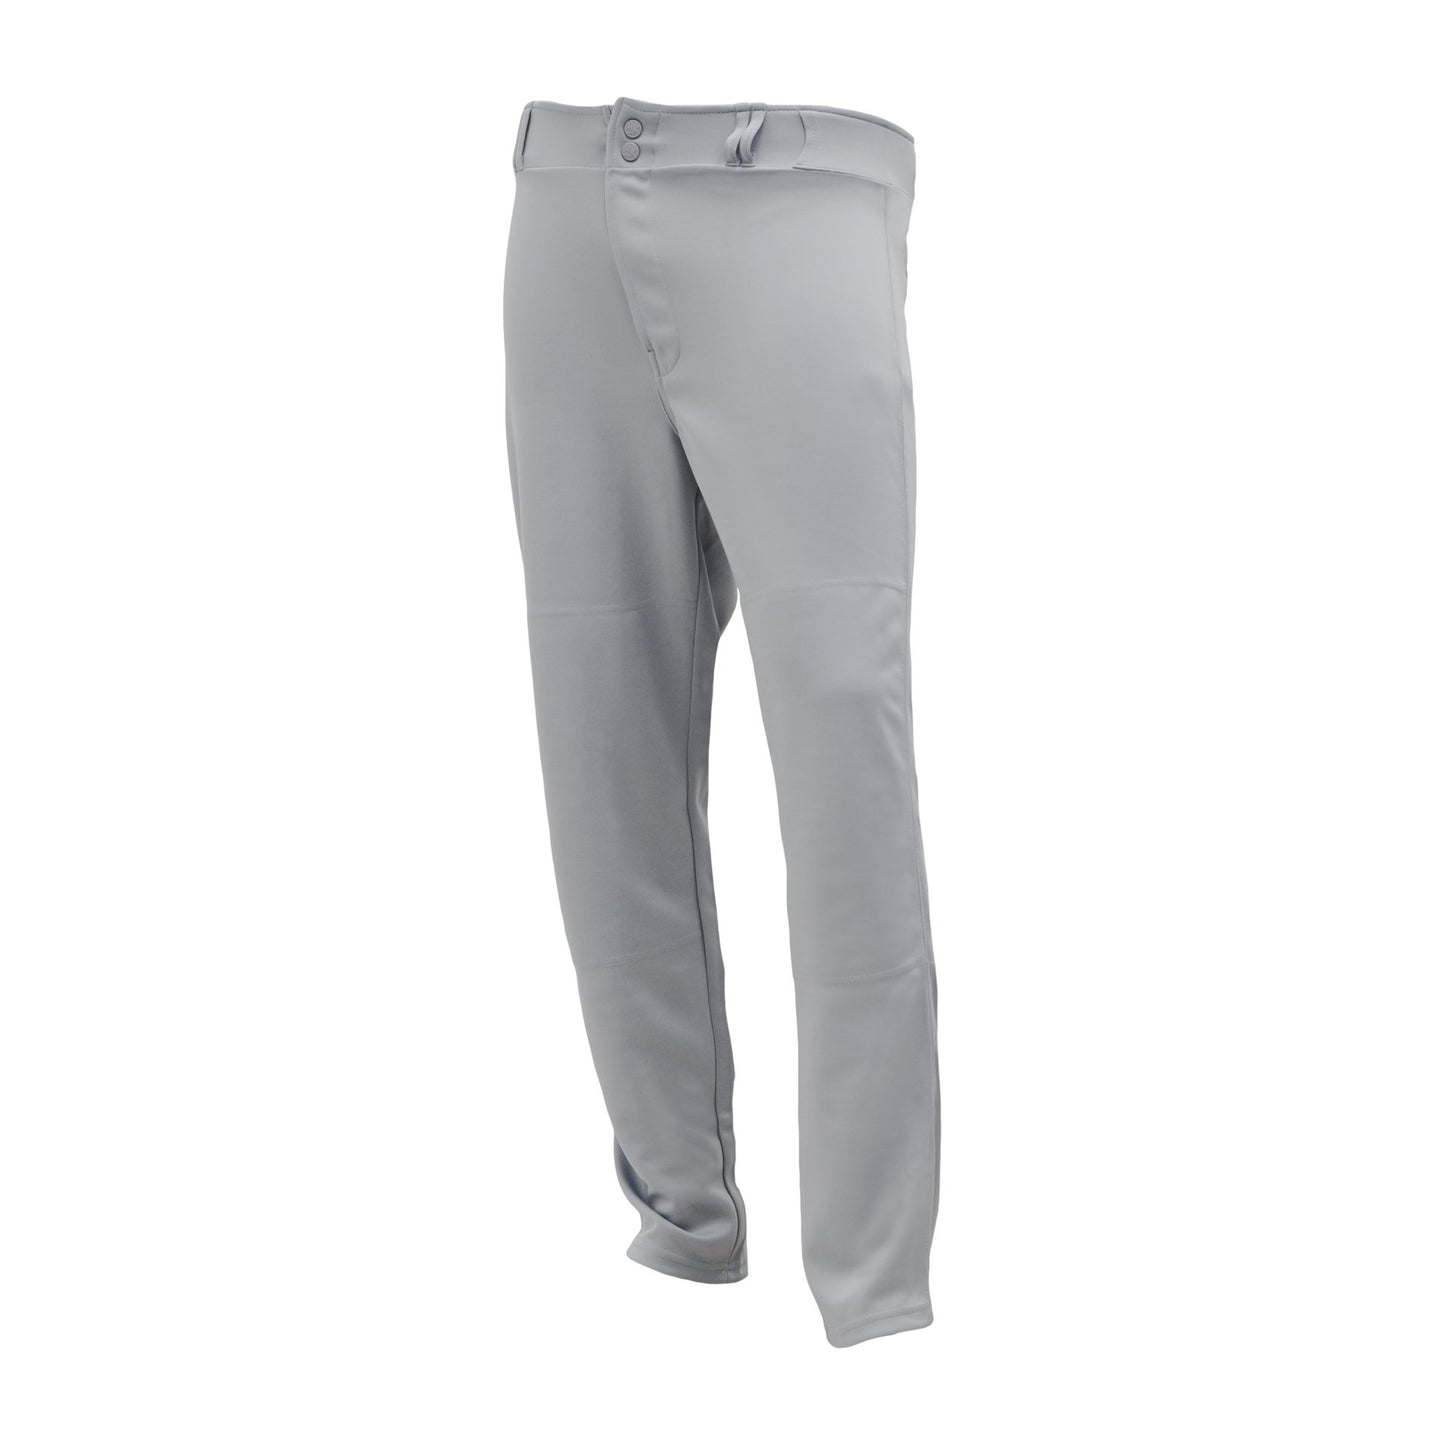 Premium Baseball Pants, Hemmed Bottom, Grey, ba1390-012